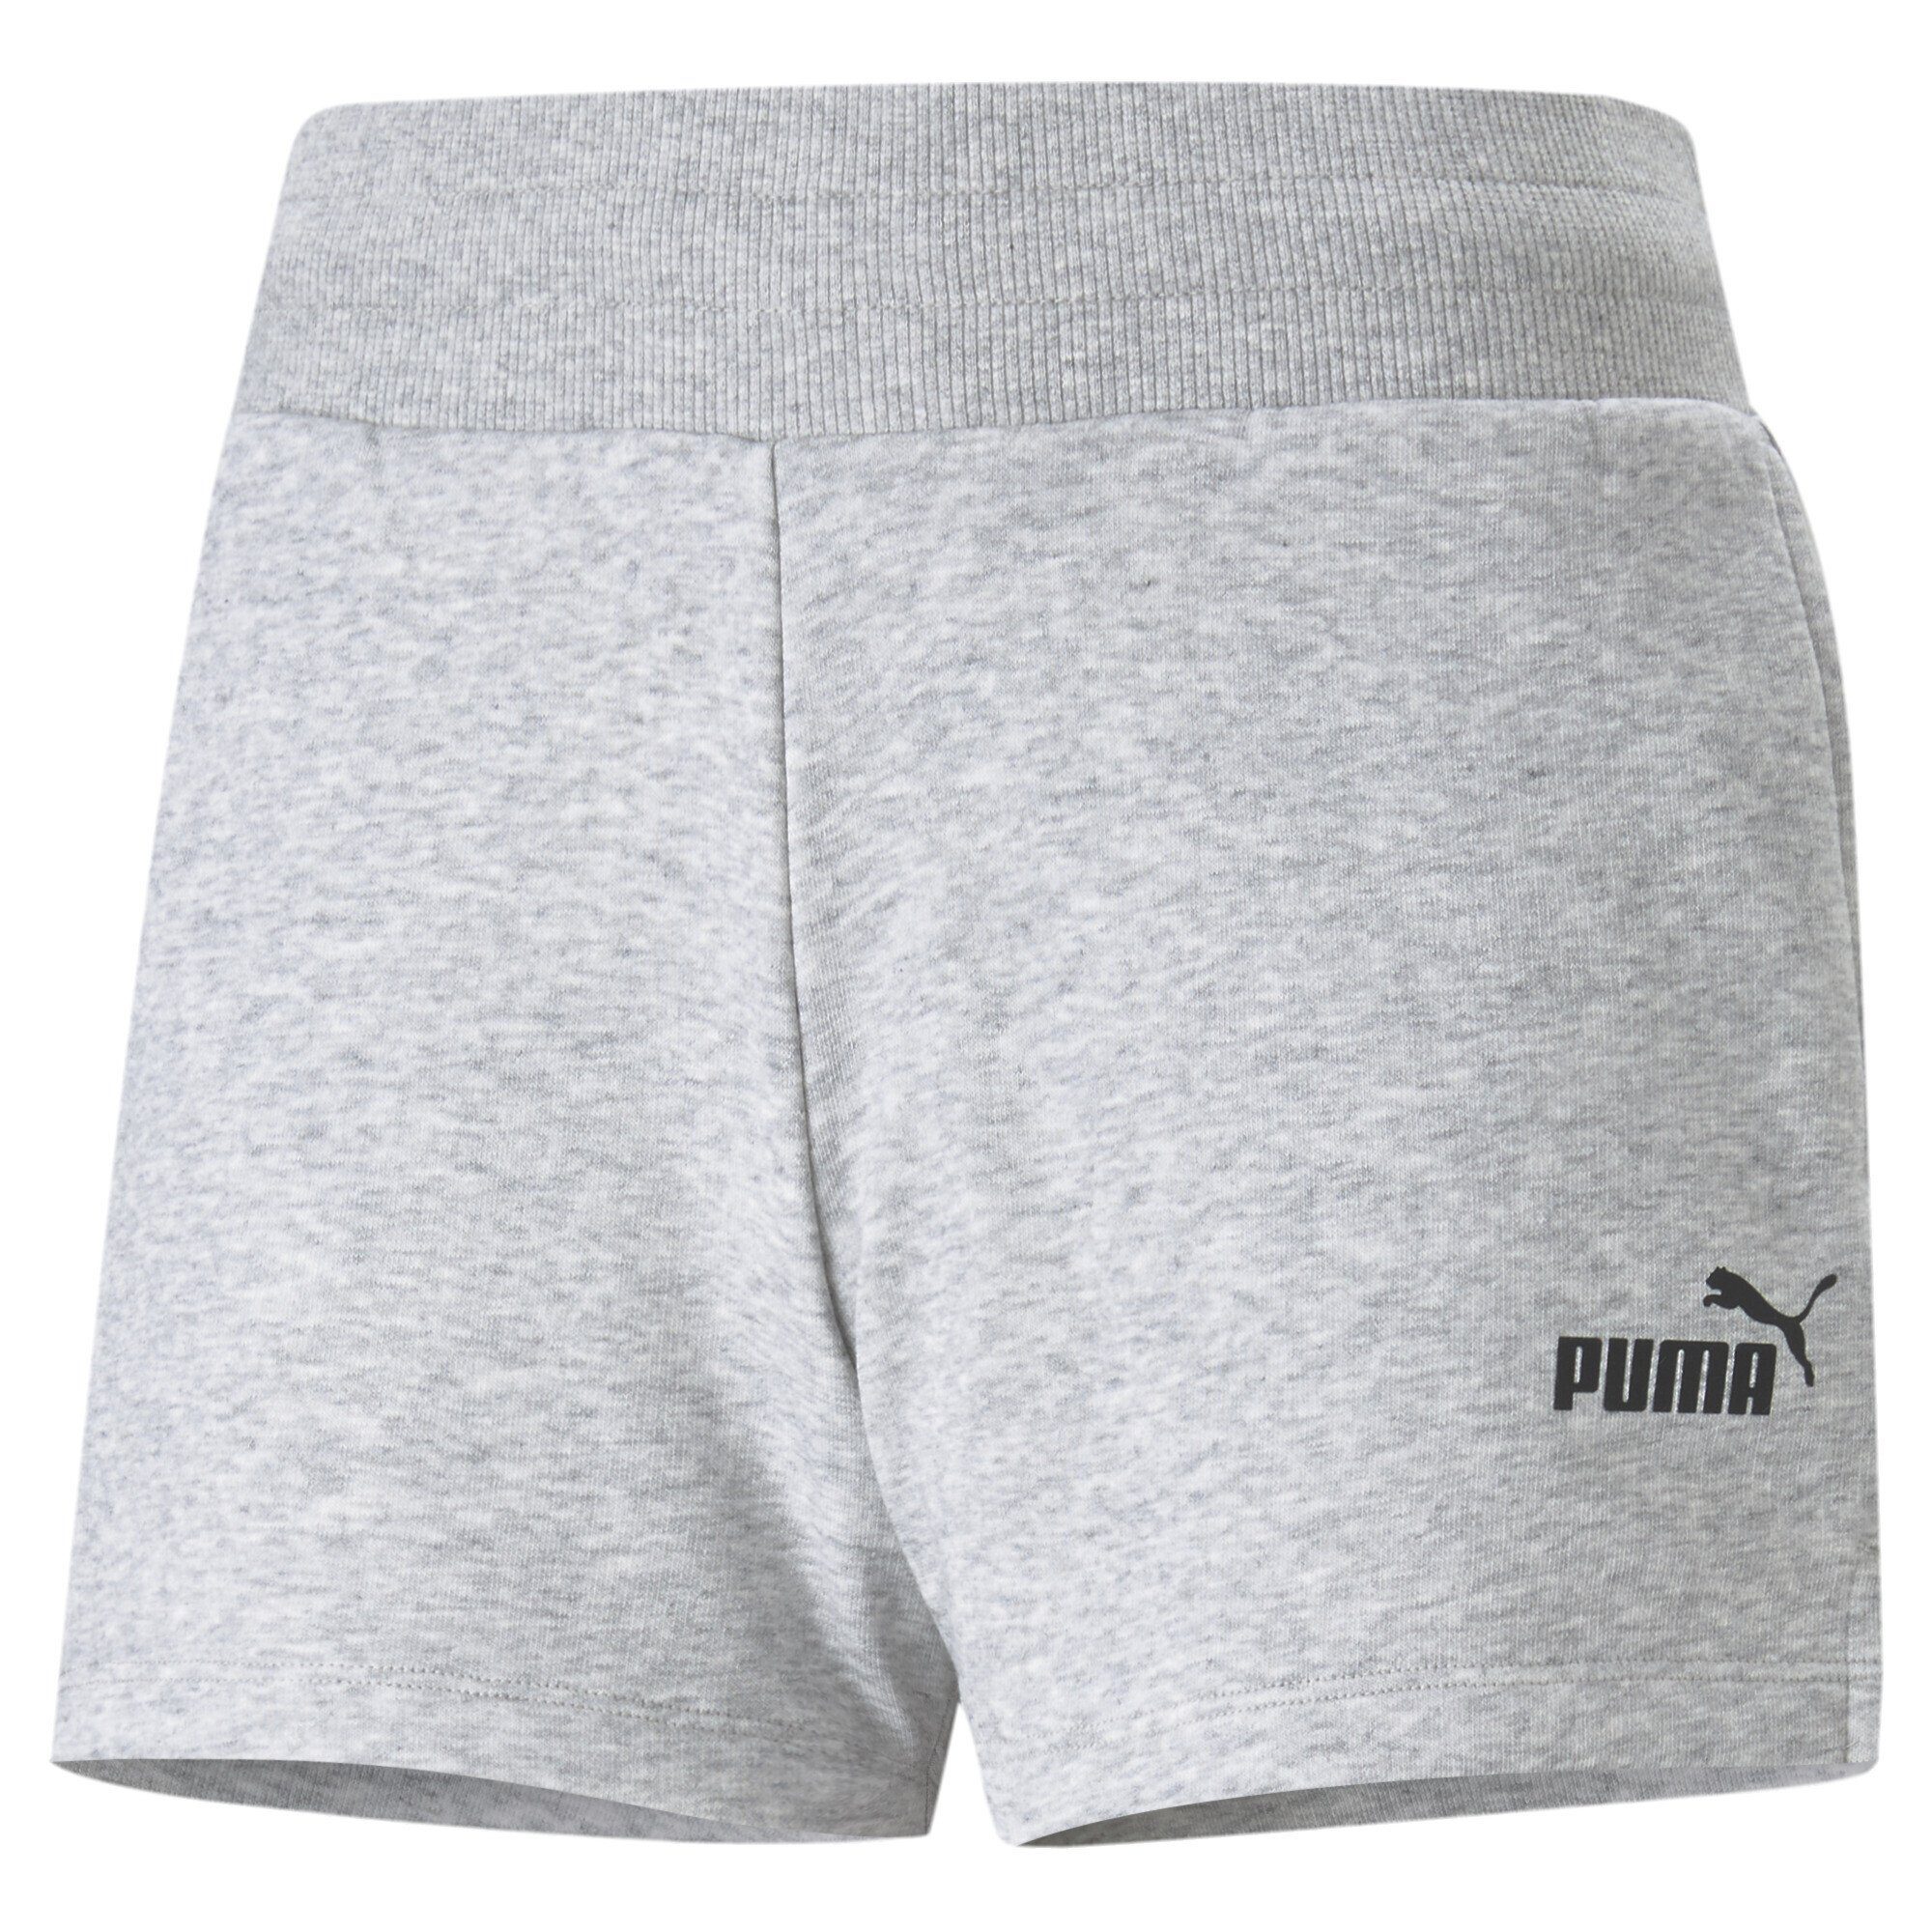 PUMA Sporthose Essentials Shorts Damen Light Gray Heather